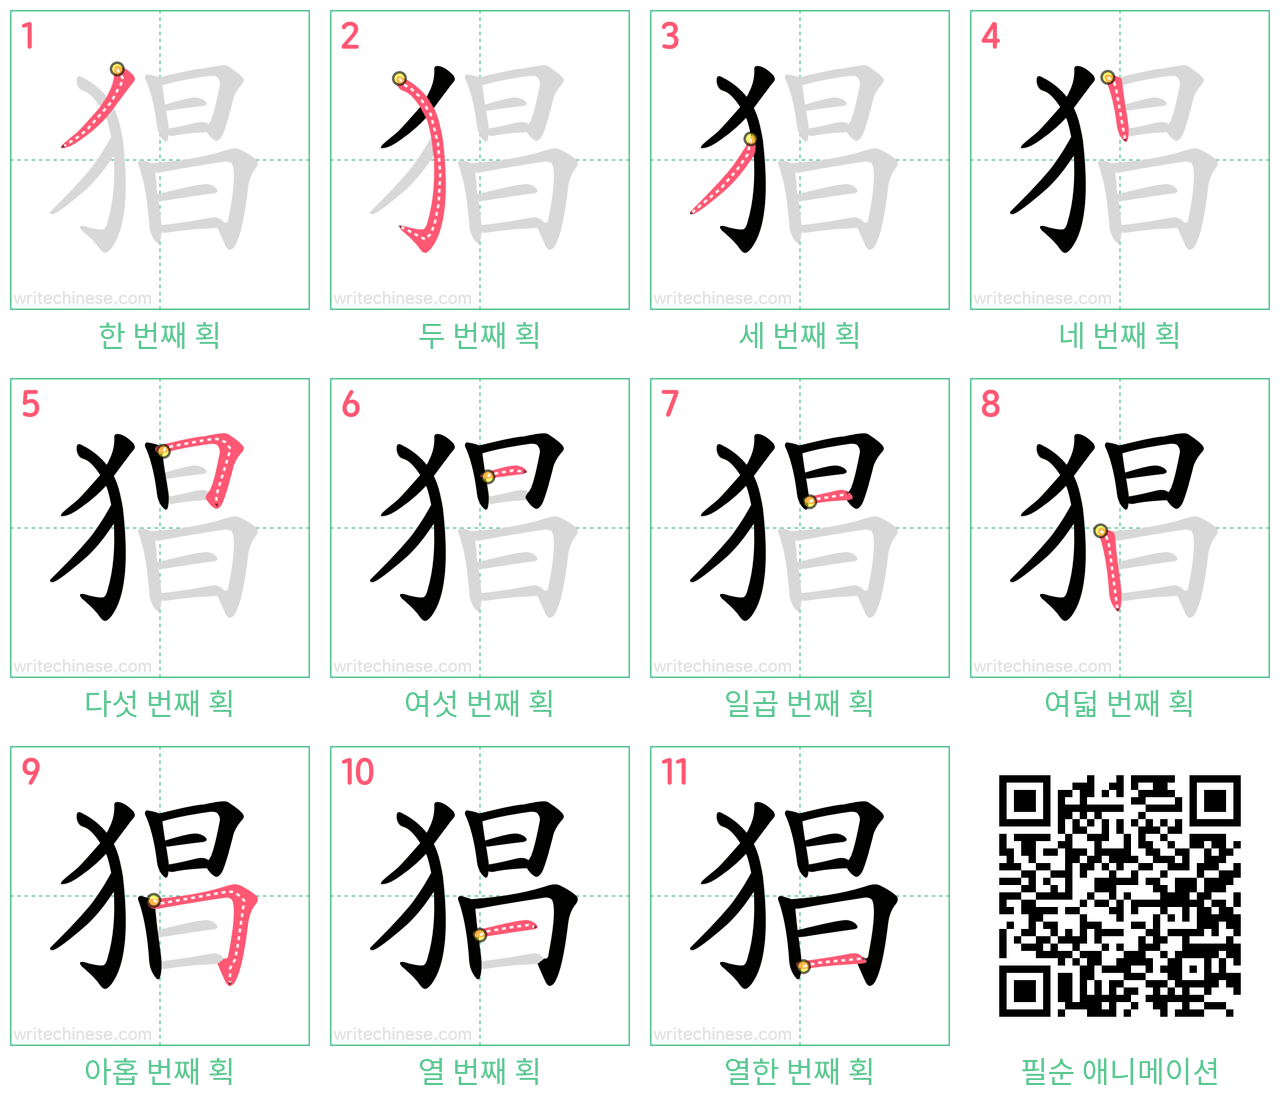 猖 step-by-step stroke order diagrams